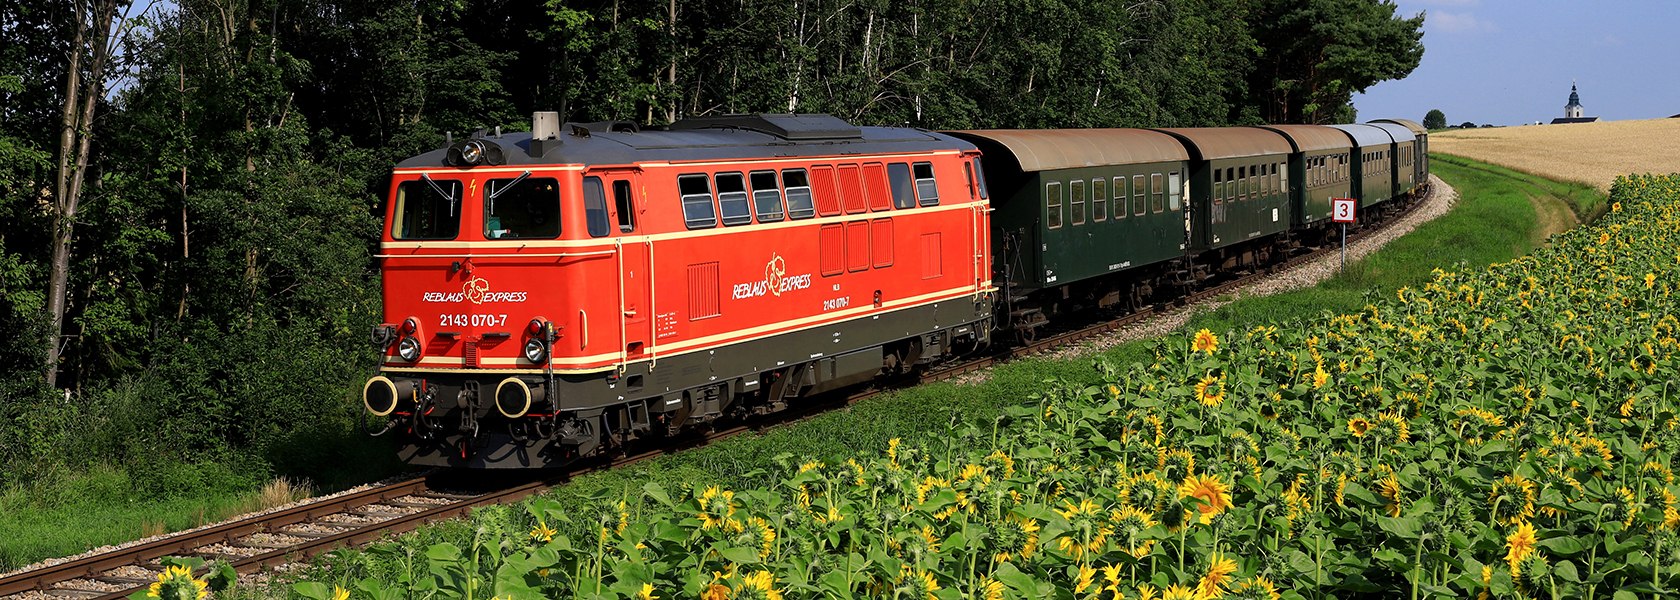 Zug mit roter Lok und grünen Waggons fährt an einem Sonnenblumenfeld vorbei.